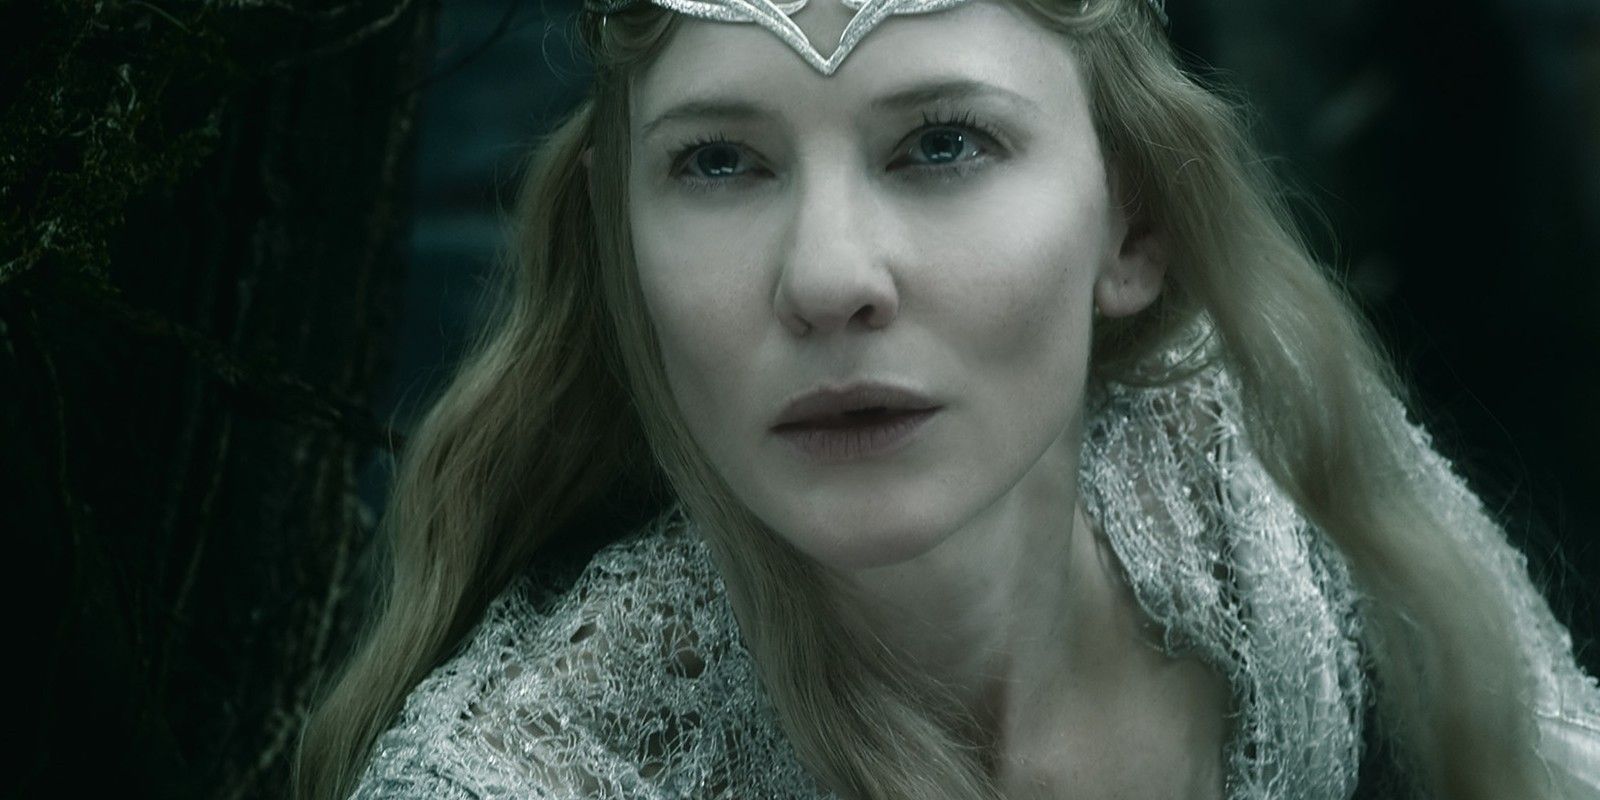 Cate Blanchett 